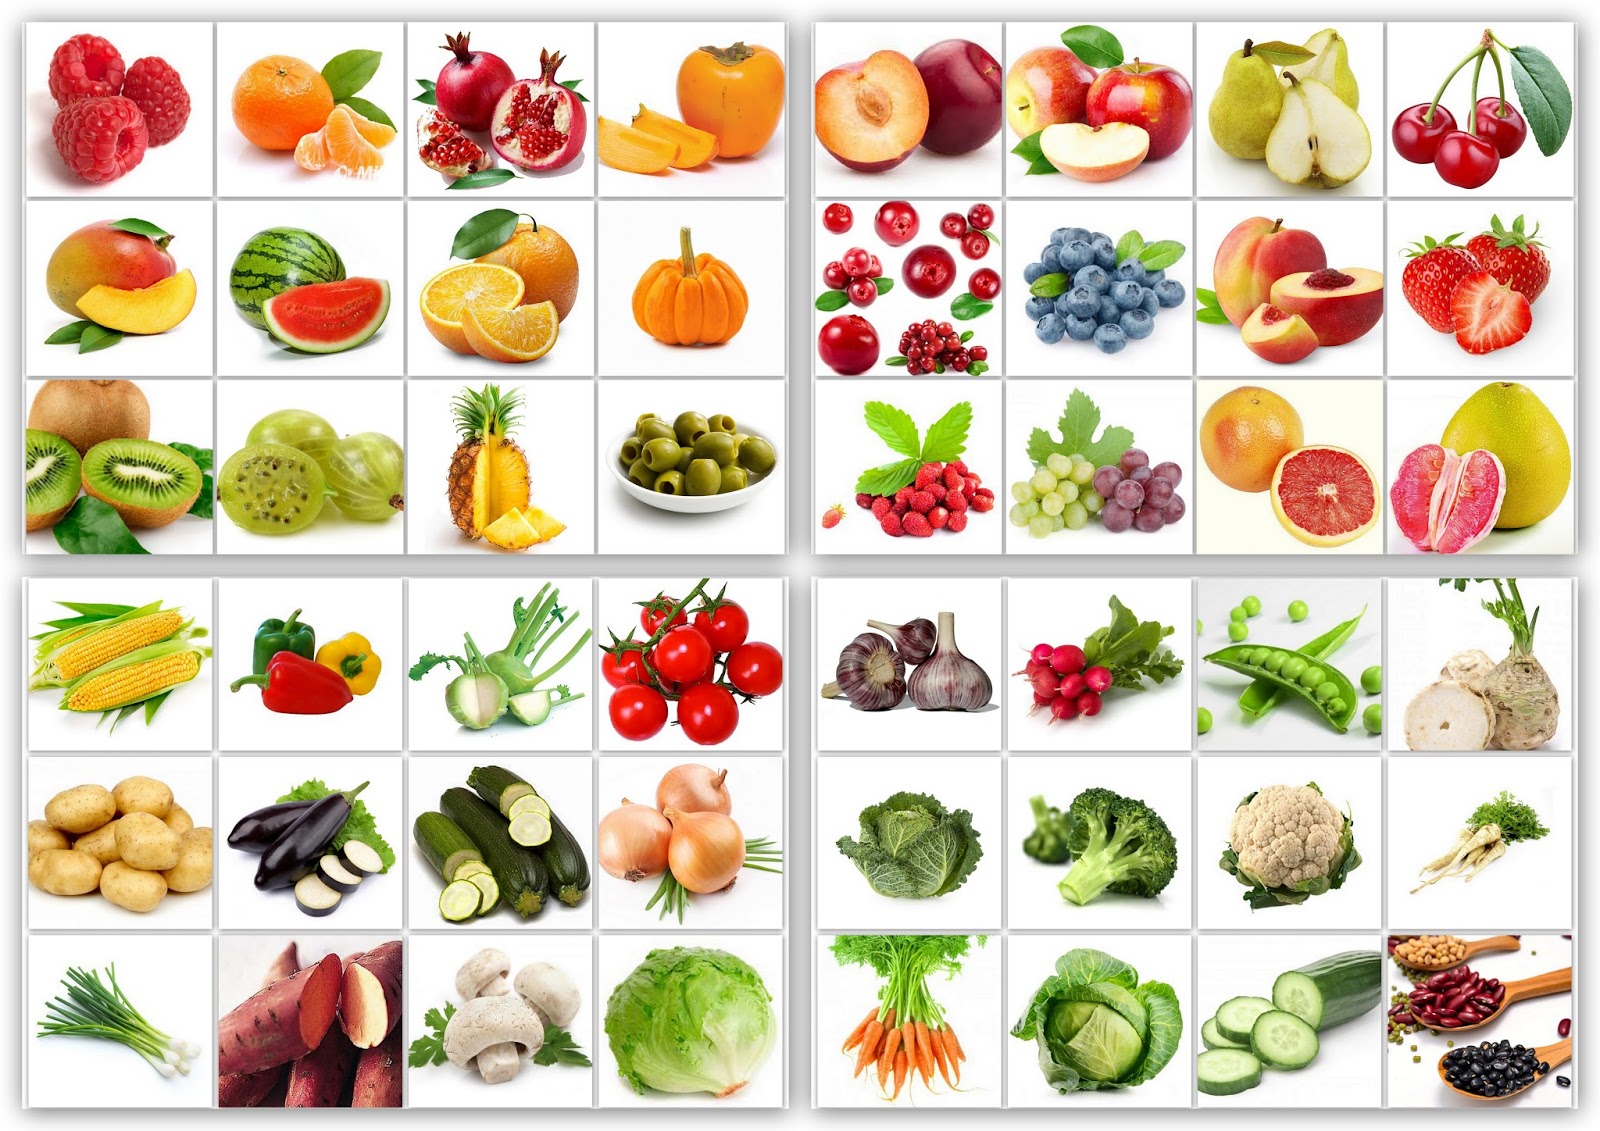 Co je ovoce a zelenina?